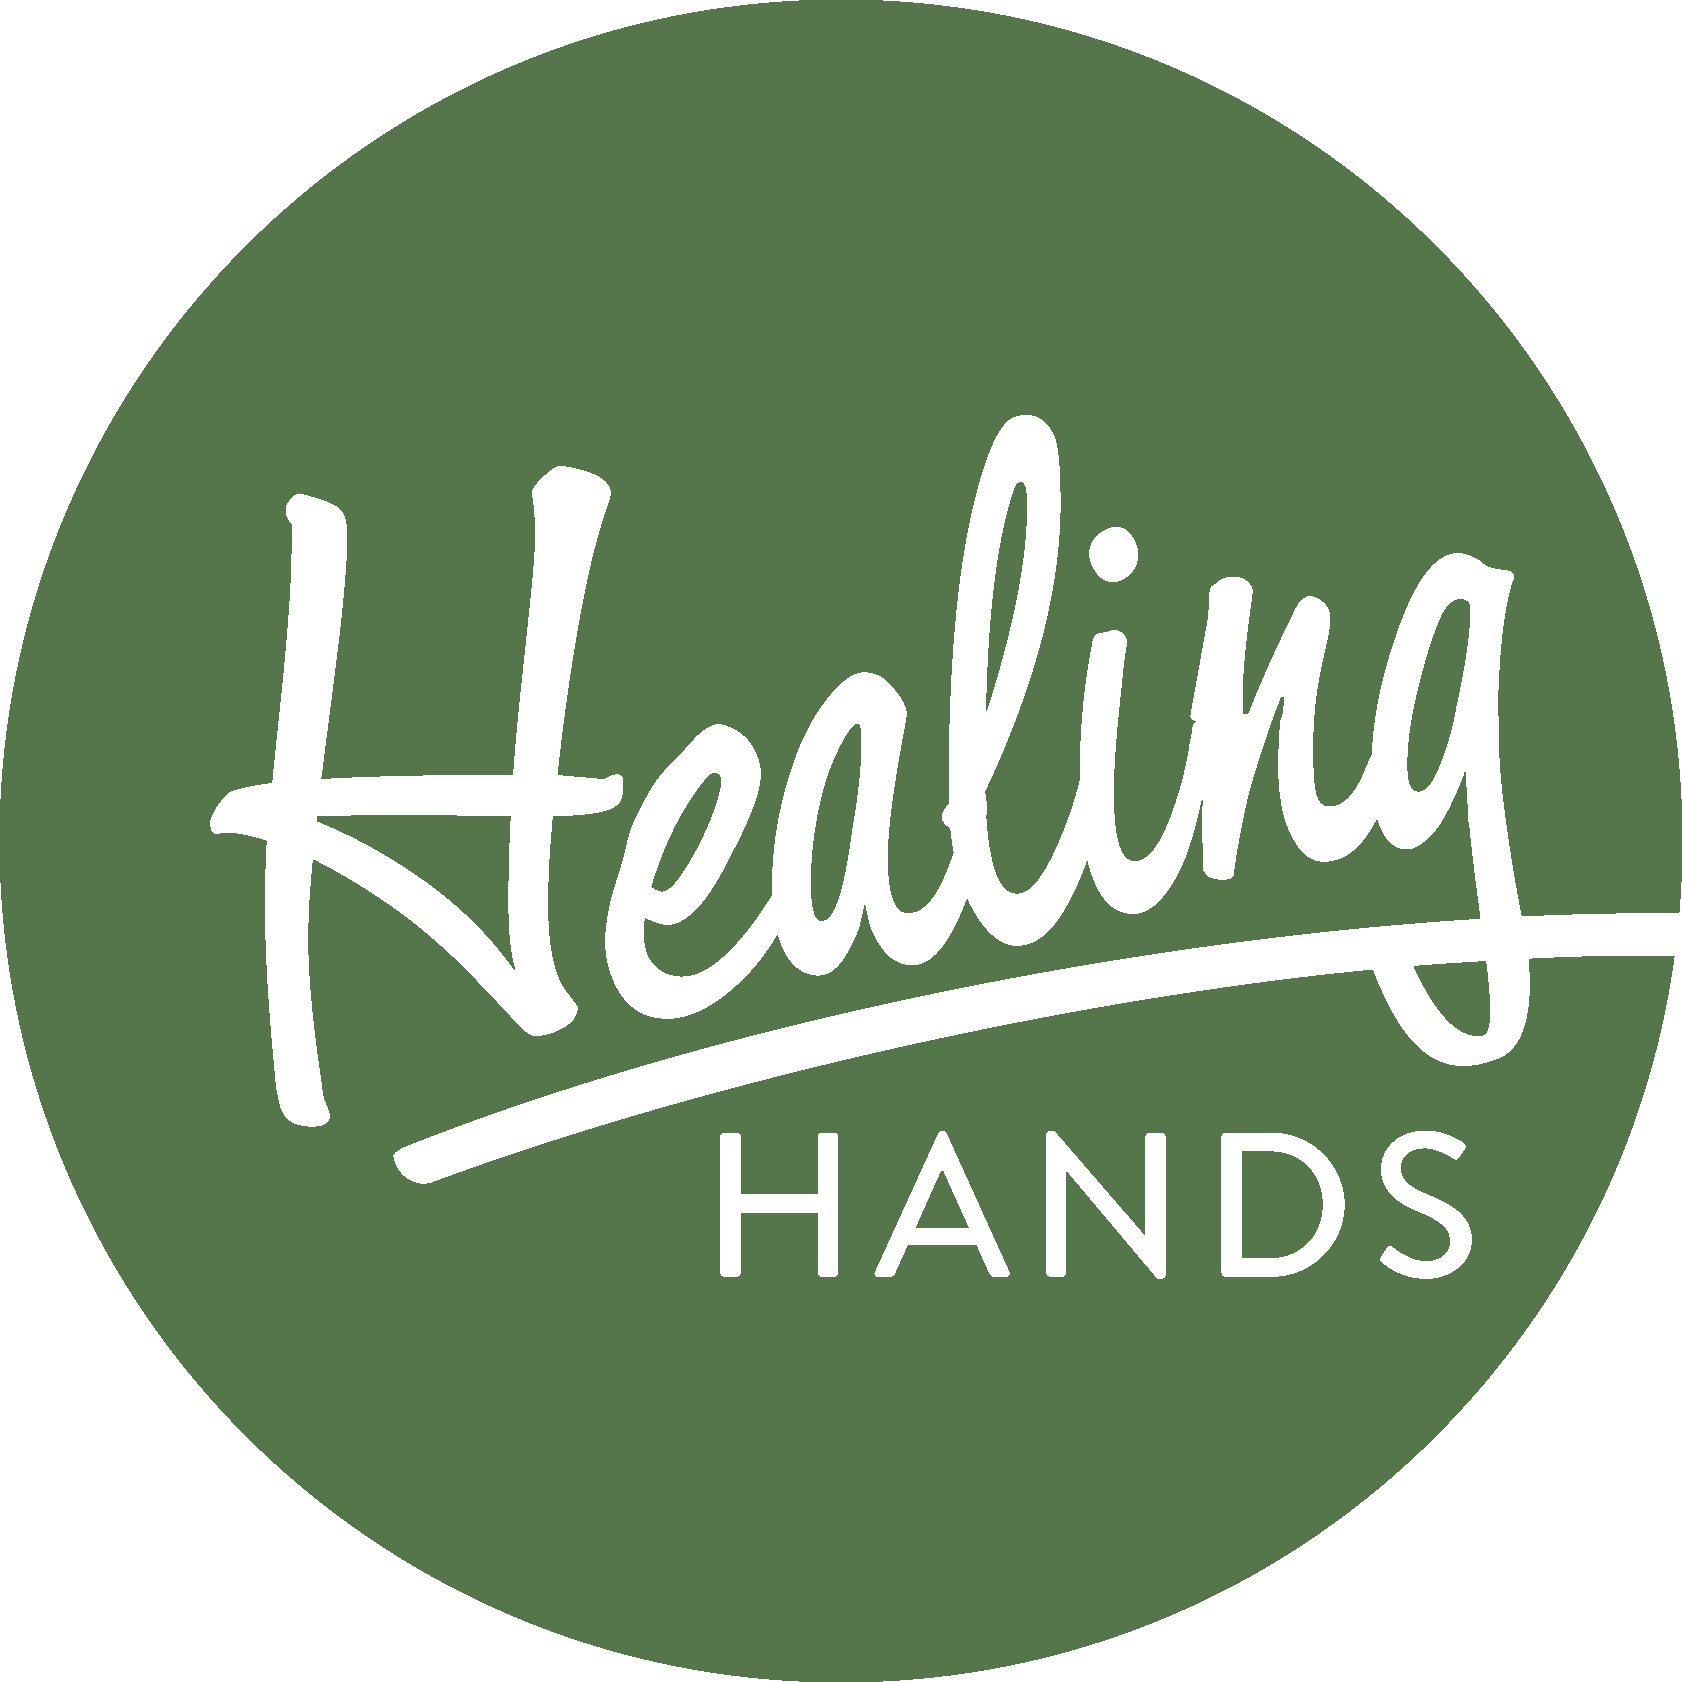 Healing Hands Outreach Center